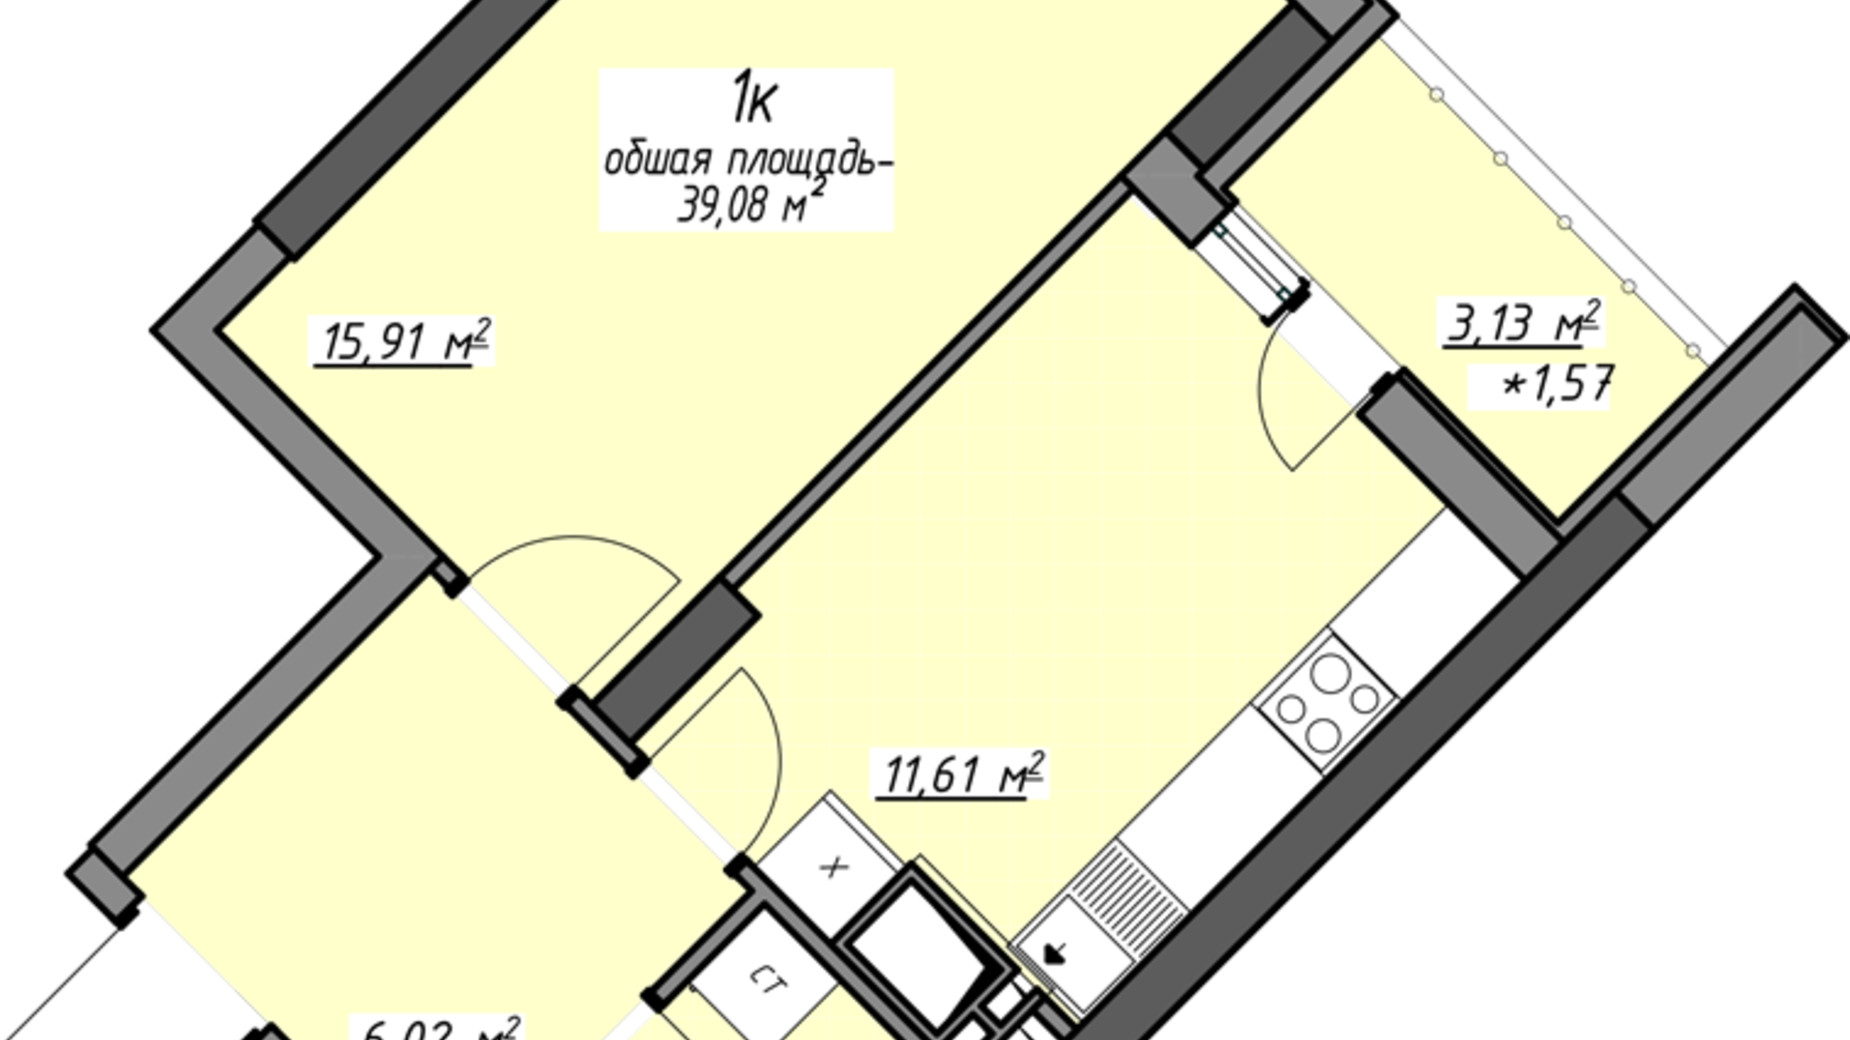 Планировка 1-комнатной квартиры в ЖК Одесские традиции на Глушко 39.08 м², фото 580967